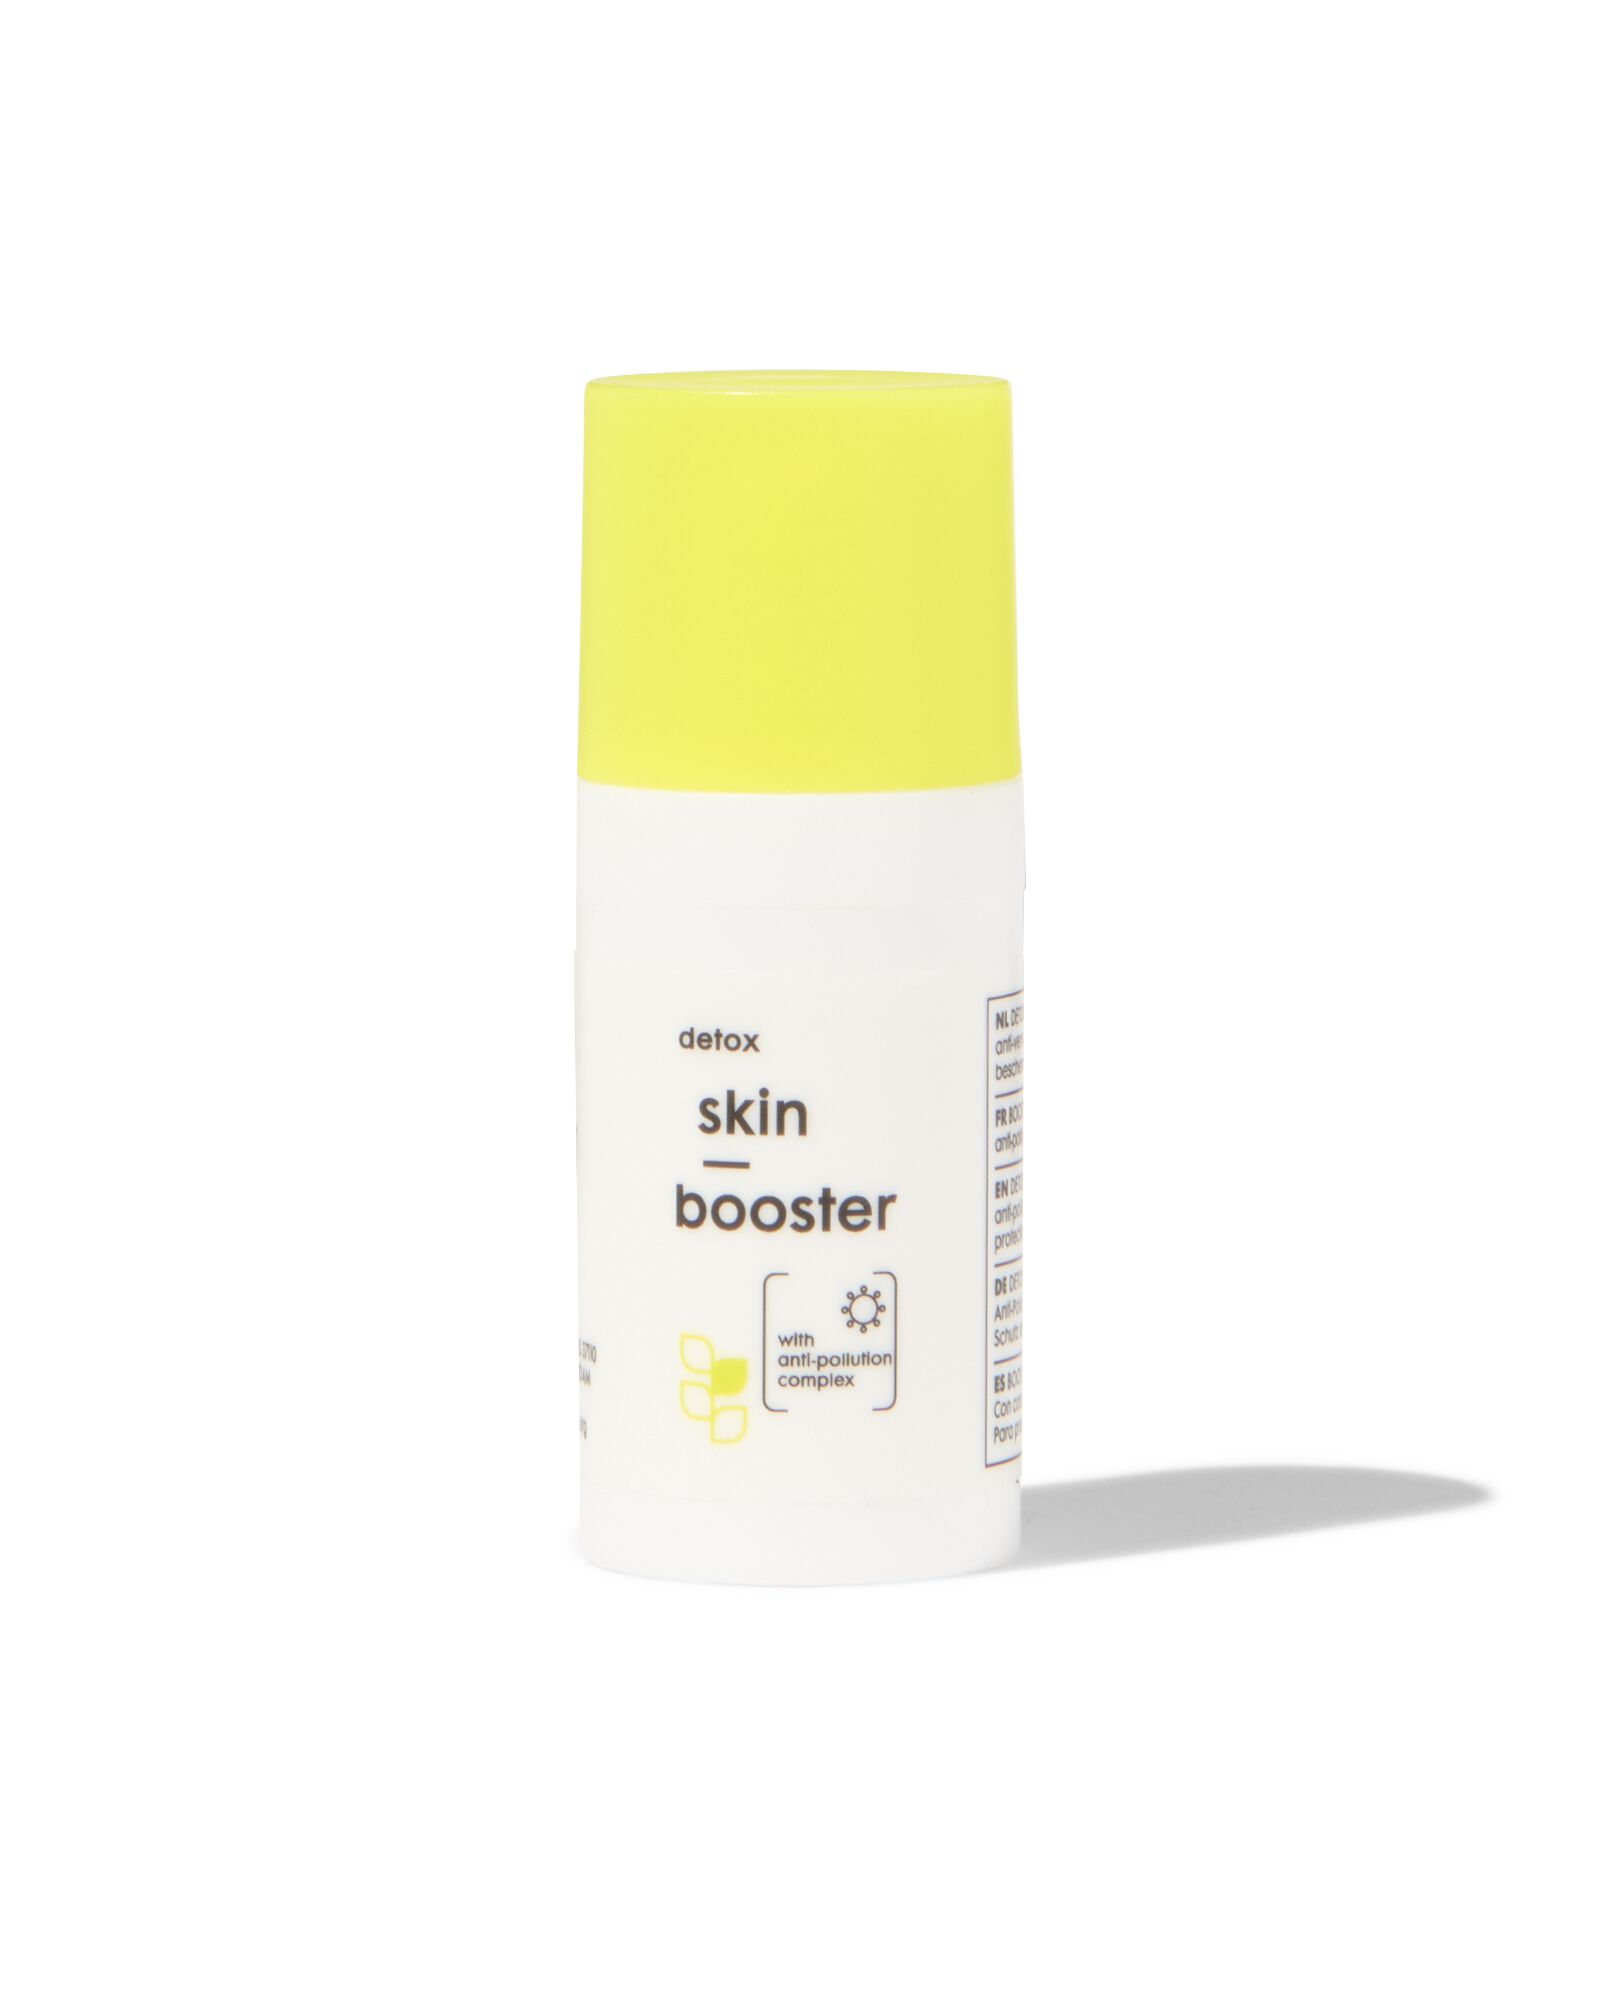 detox skin booster - HEMA